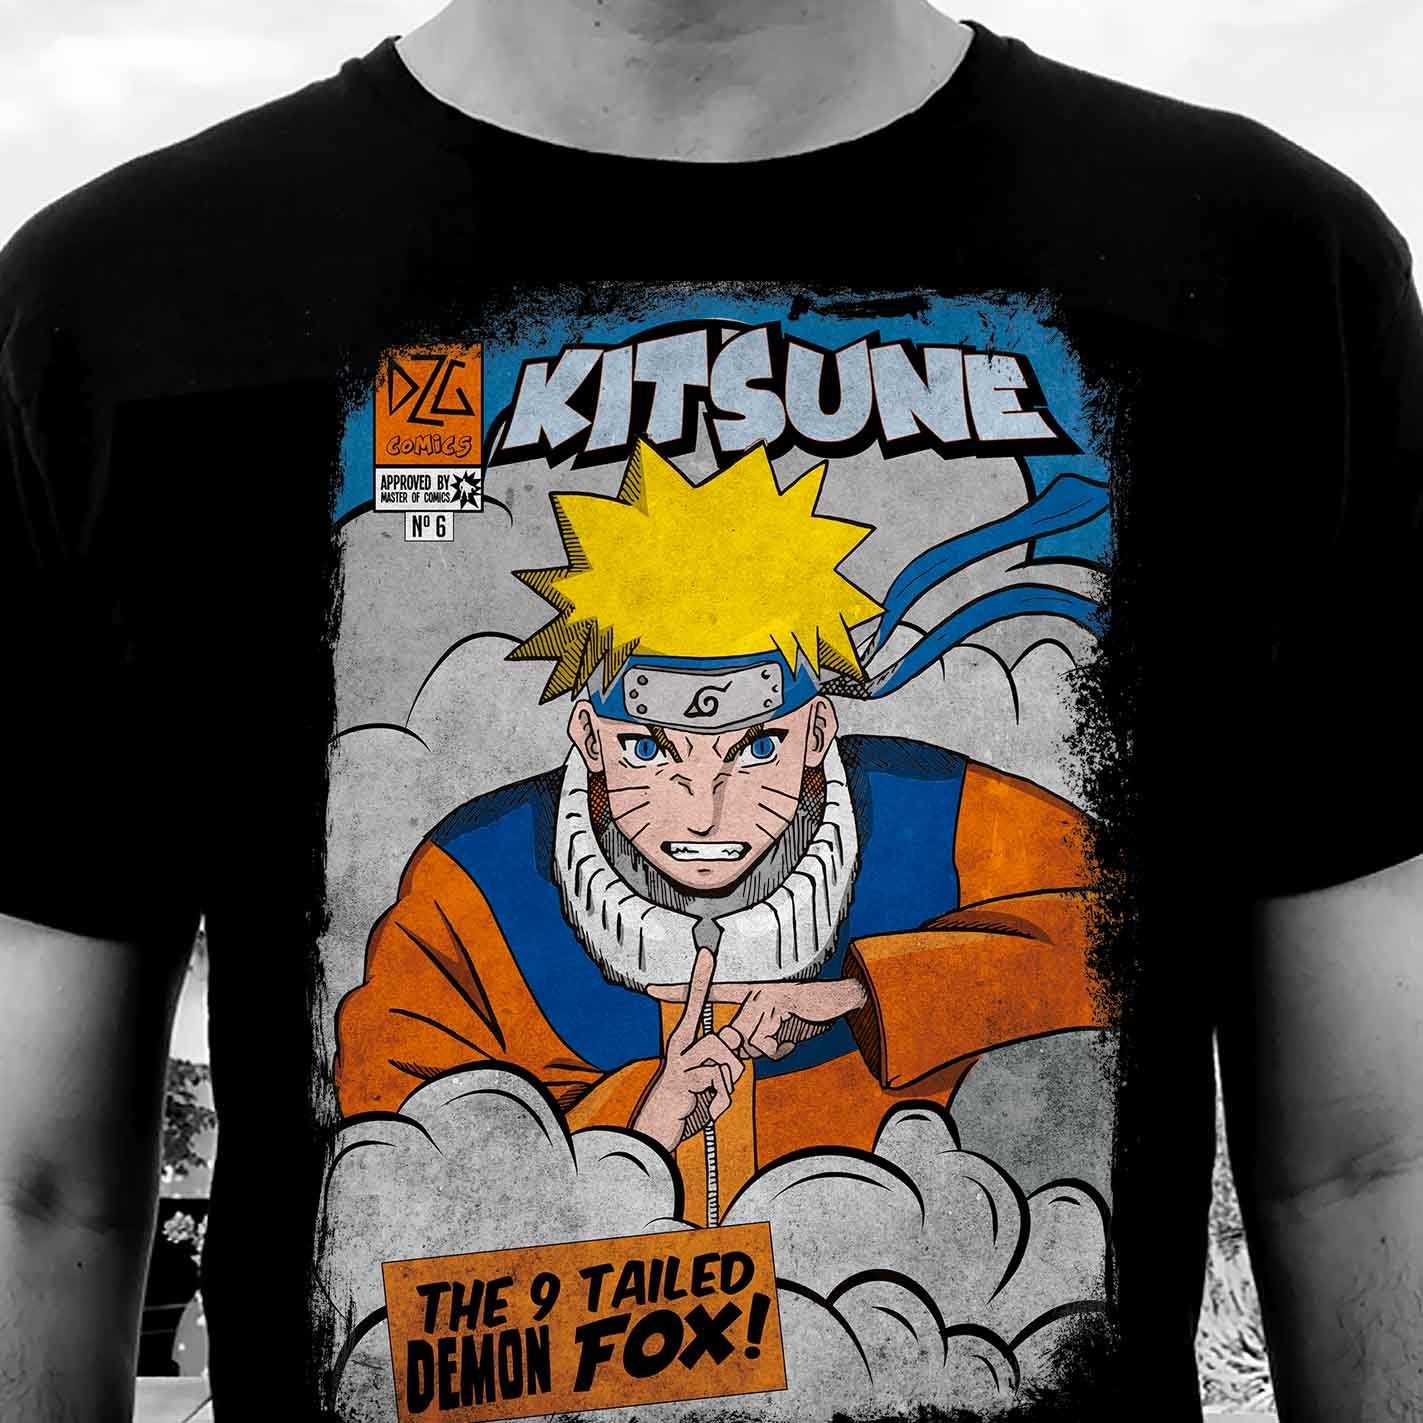 Camiseta de Naruto. El zorro de las 9 colas